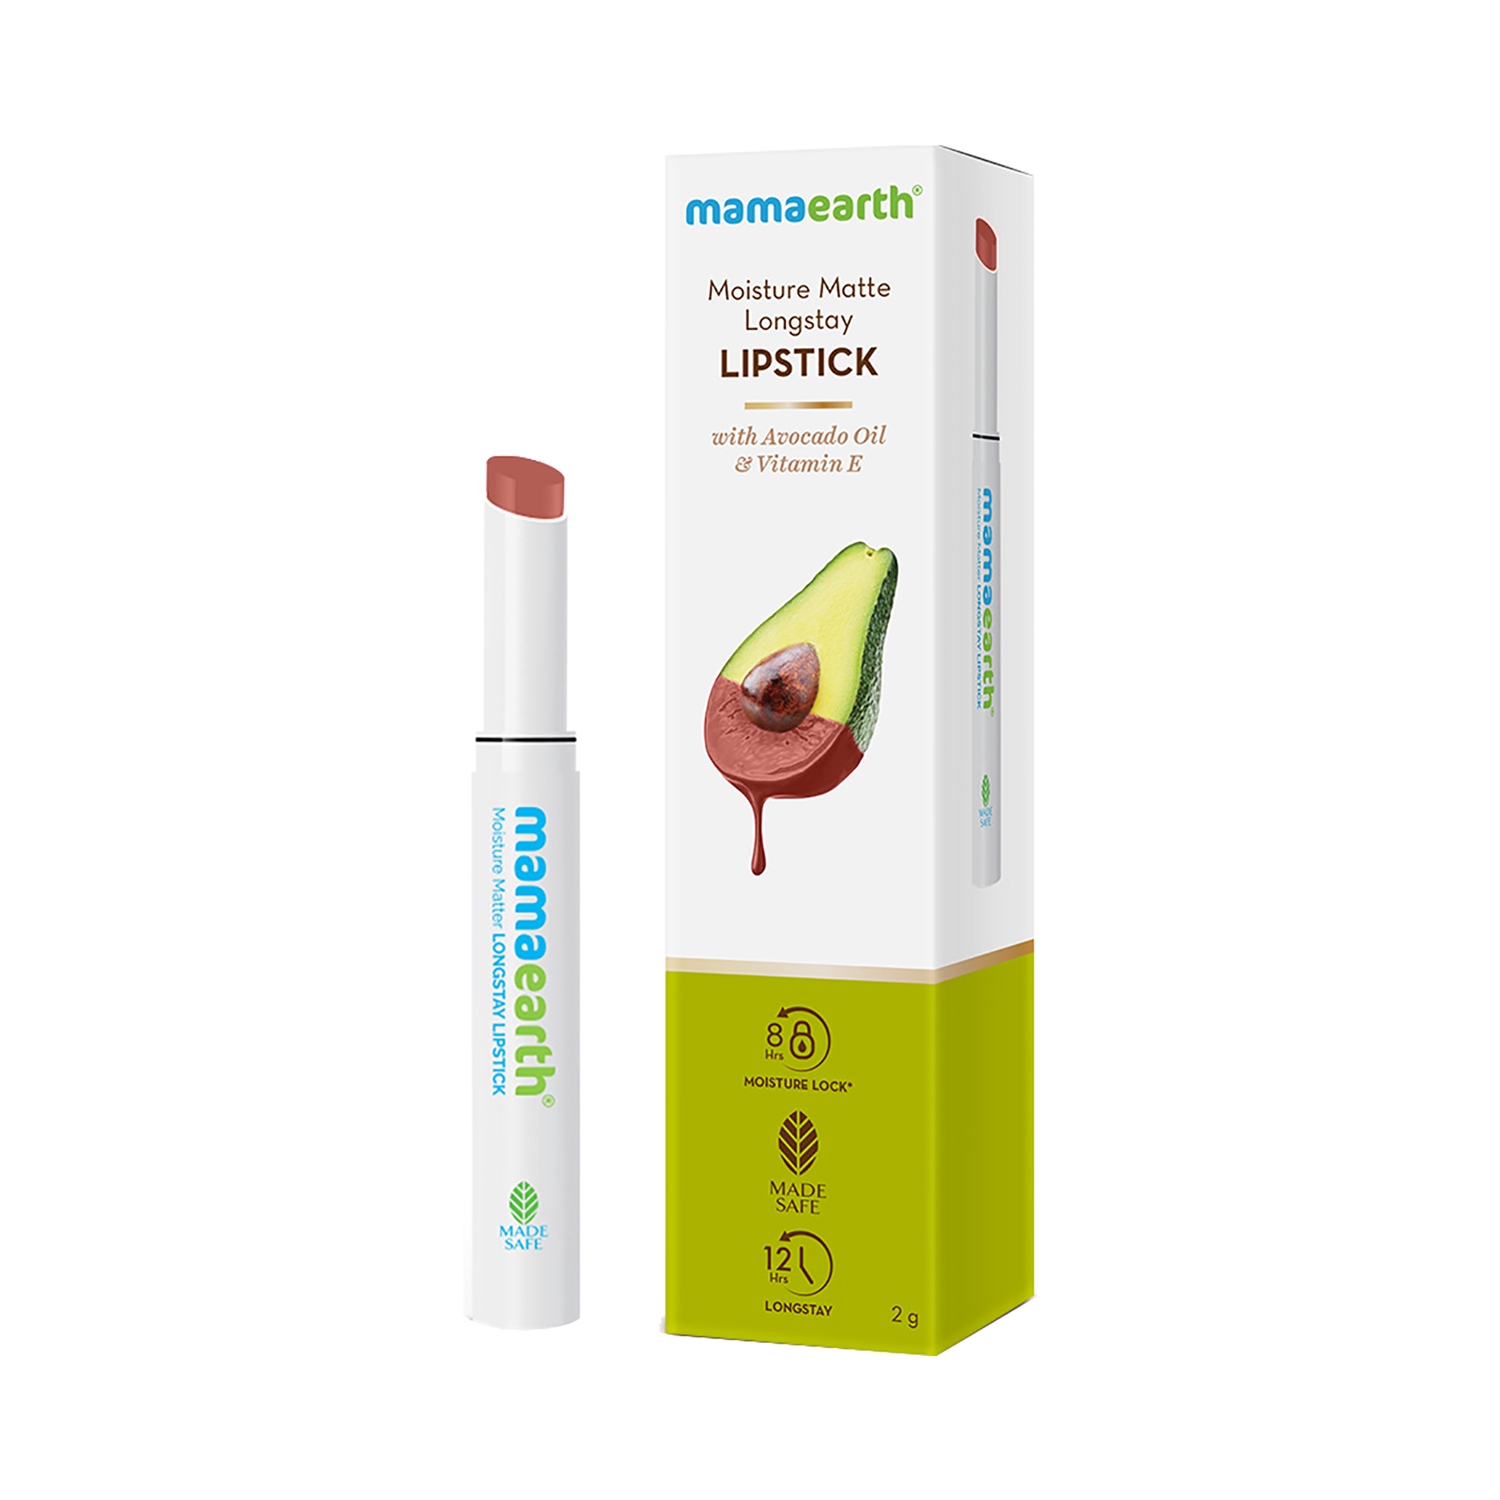 Mamaearth | Mamaearth Moisture Matte Longstay Lipstick With Avocado Oil & Vitamin E - 14 Peach Nude (2g)